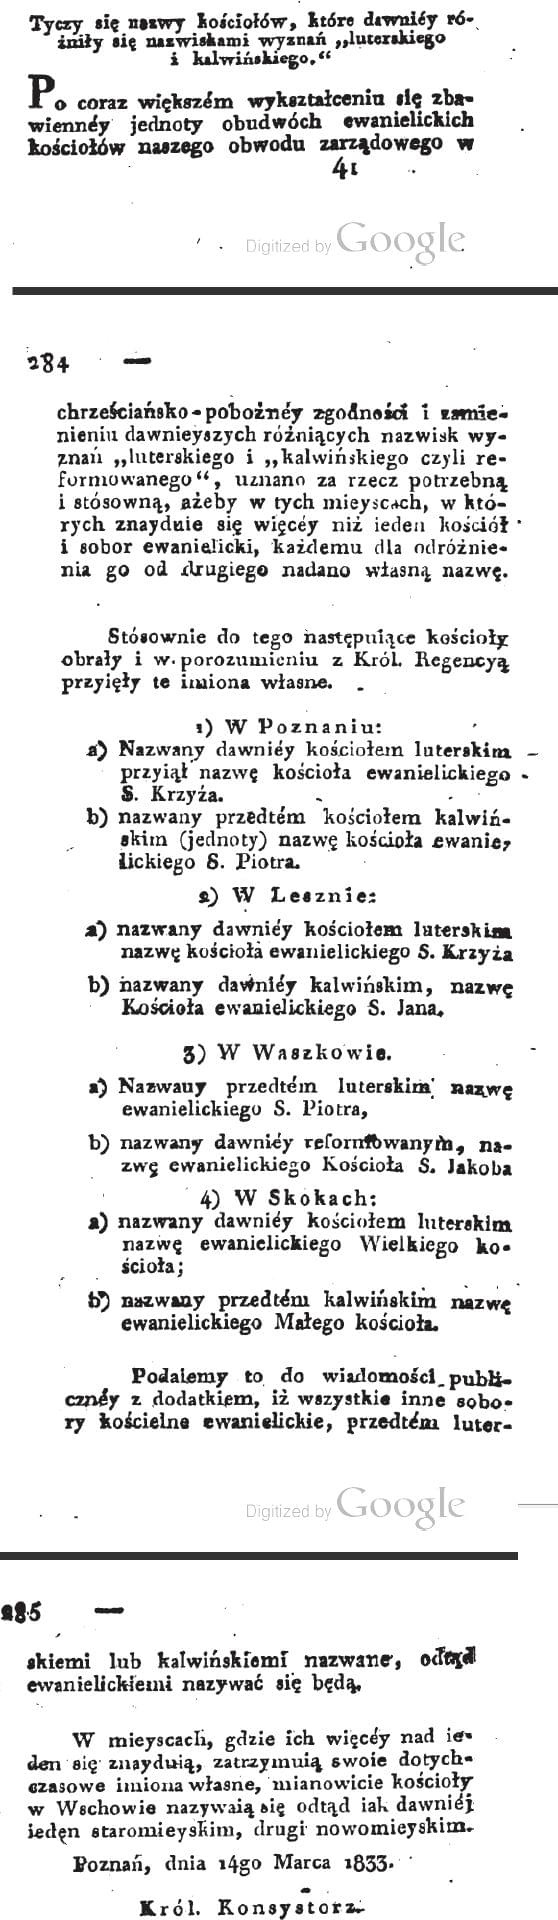 1833 Nowe nazwy kościołów wyznania Kalwińskiego i Luteranskiego